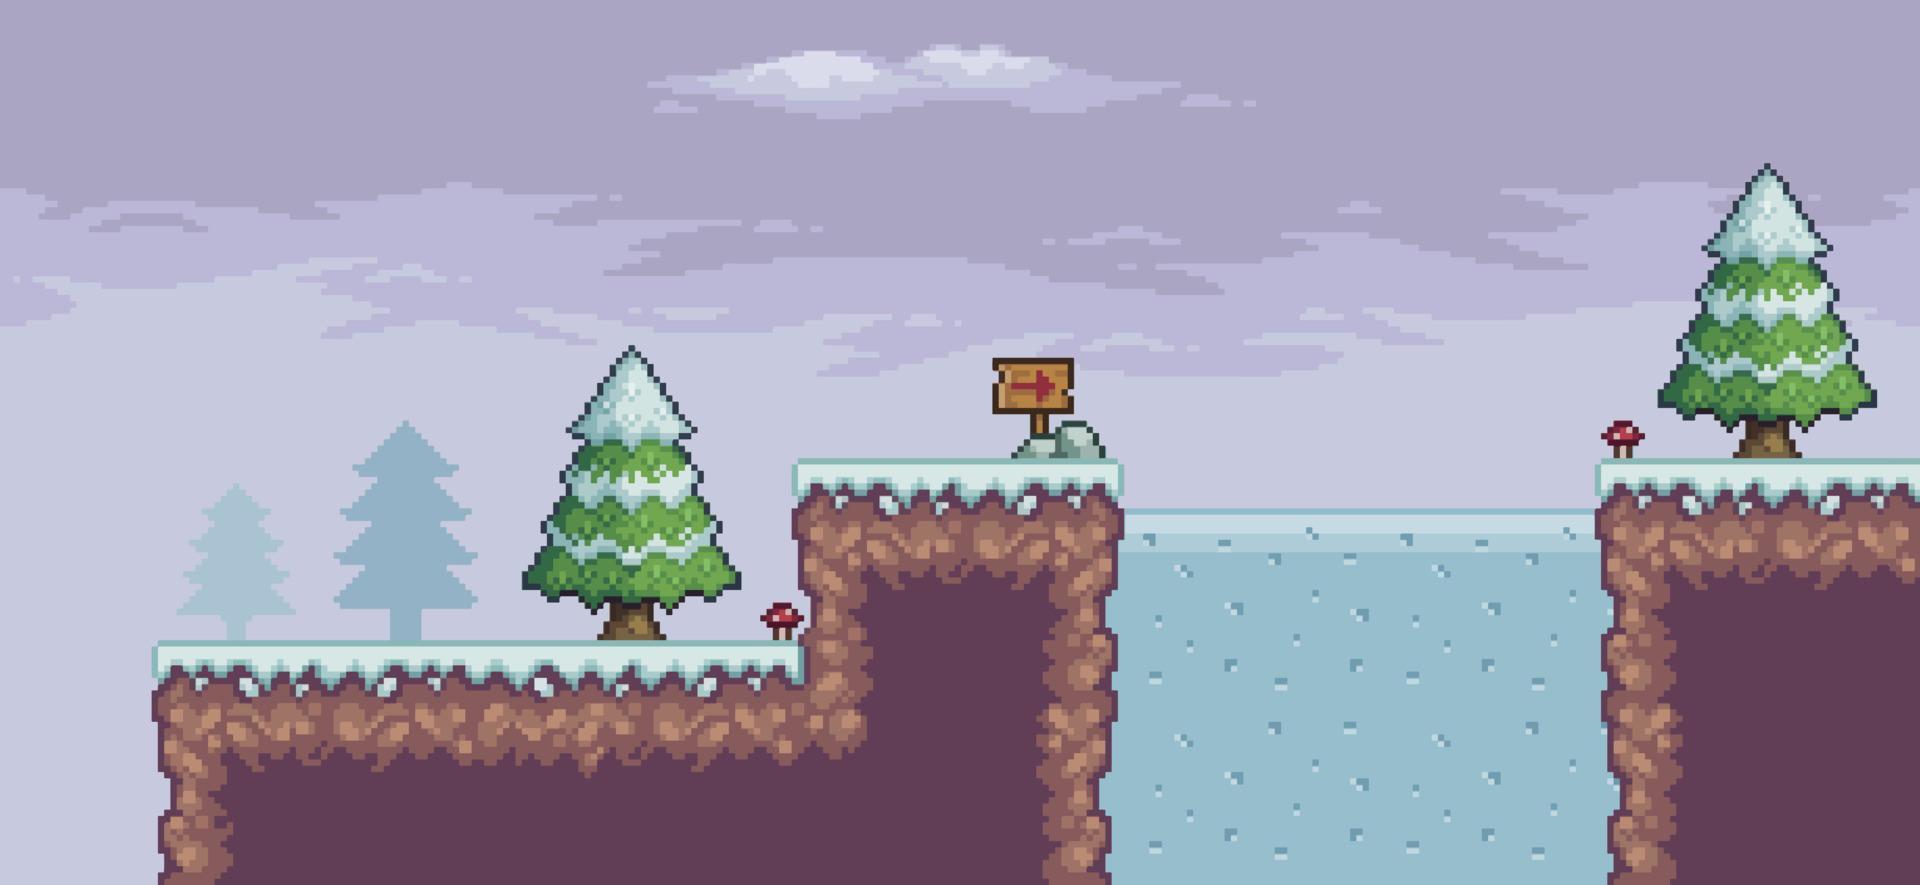 pixelart-spelscène in sneeuw met pijnbomen, bevroren meer, houten plank en wolken 8-bits achtergrond vector